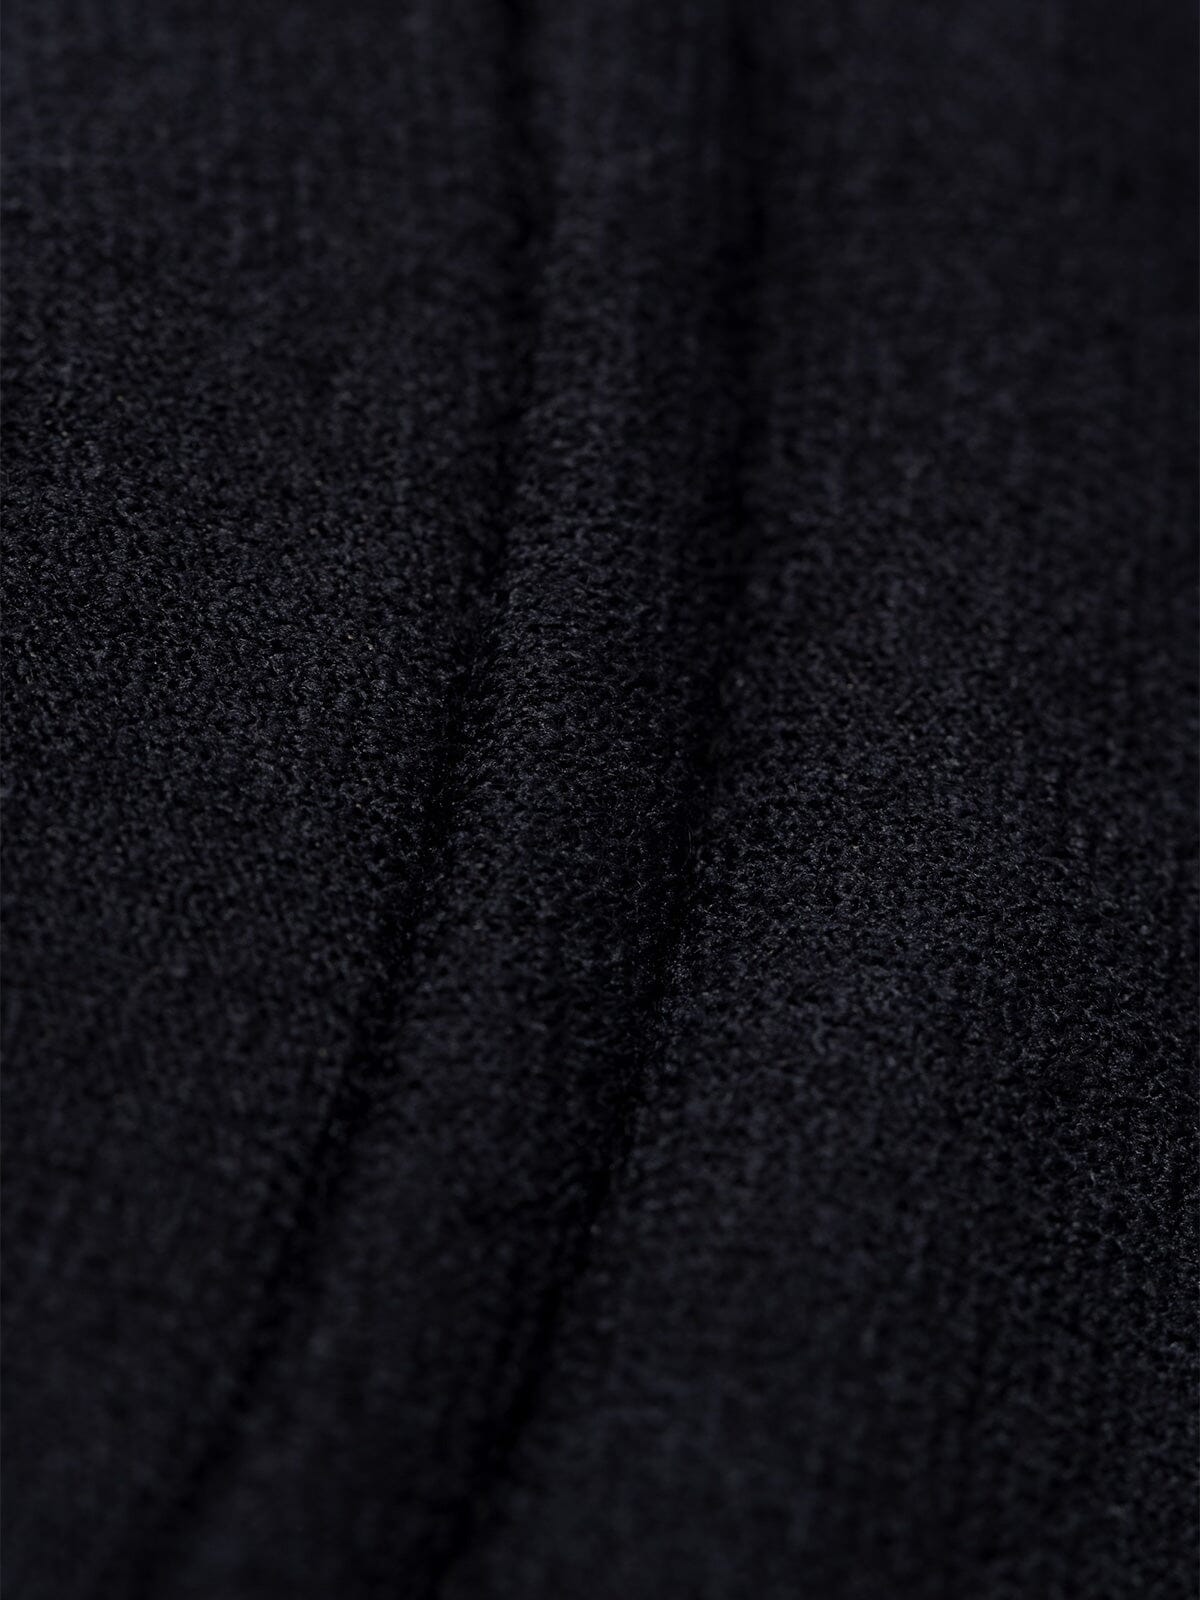 Mason : Power Wool by Mission Workshop - Säänkestävät laukut ja tekniset vaatteet - San Francisco & Los Angeles - Rakennettu kestämään - ikuinen takuu